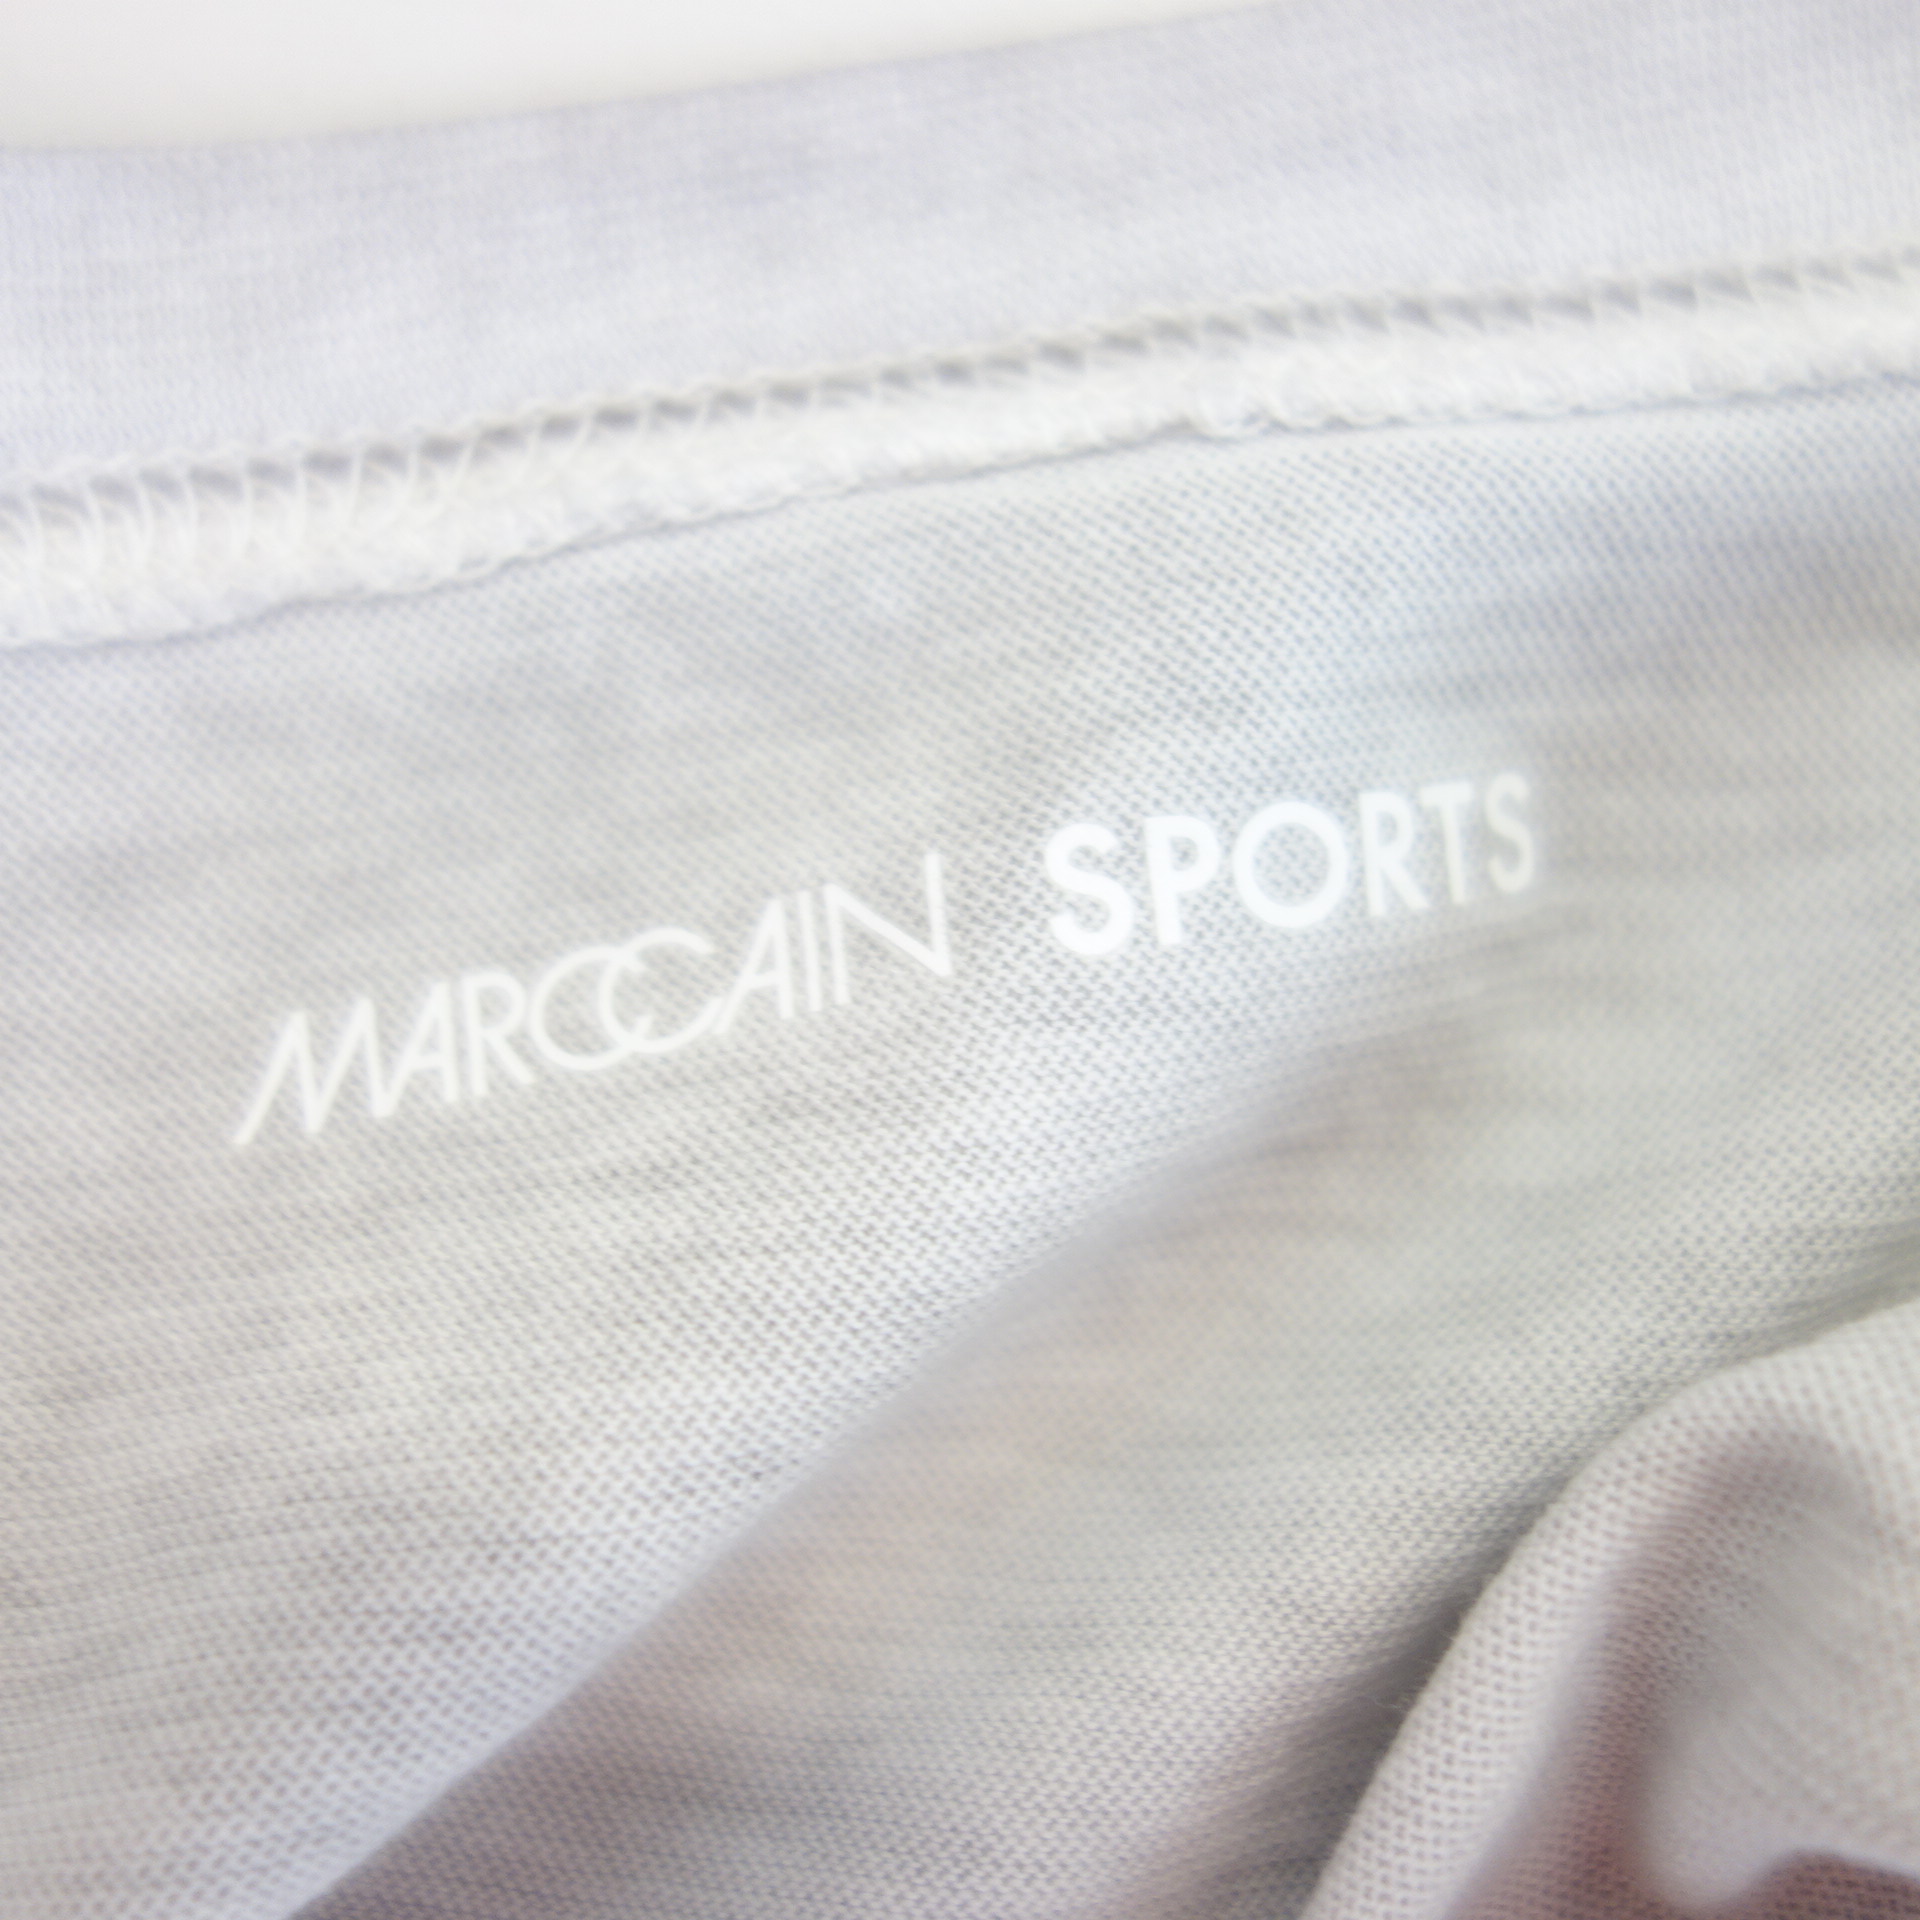 MARC CAIN Damen Shirt T-Shirt Oberteil Grau Oversize Schnitt 100% Baumwolle  Größe N2 36